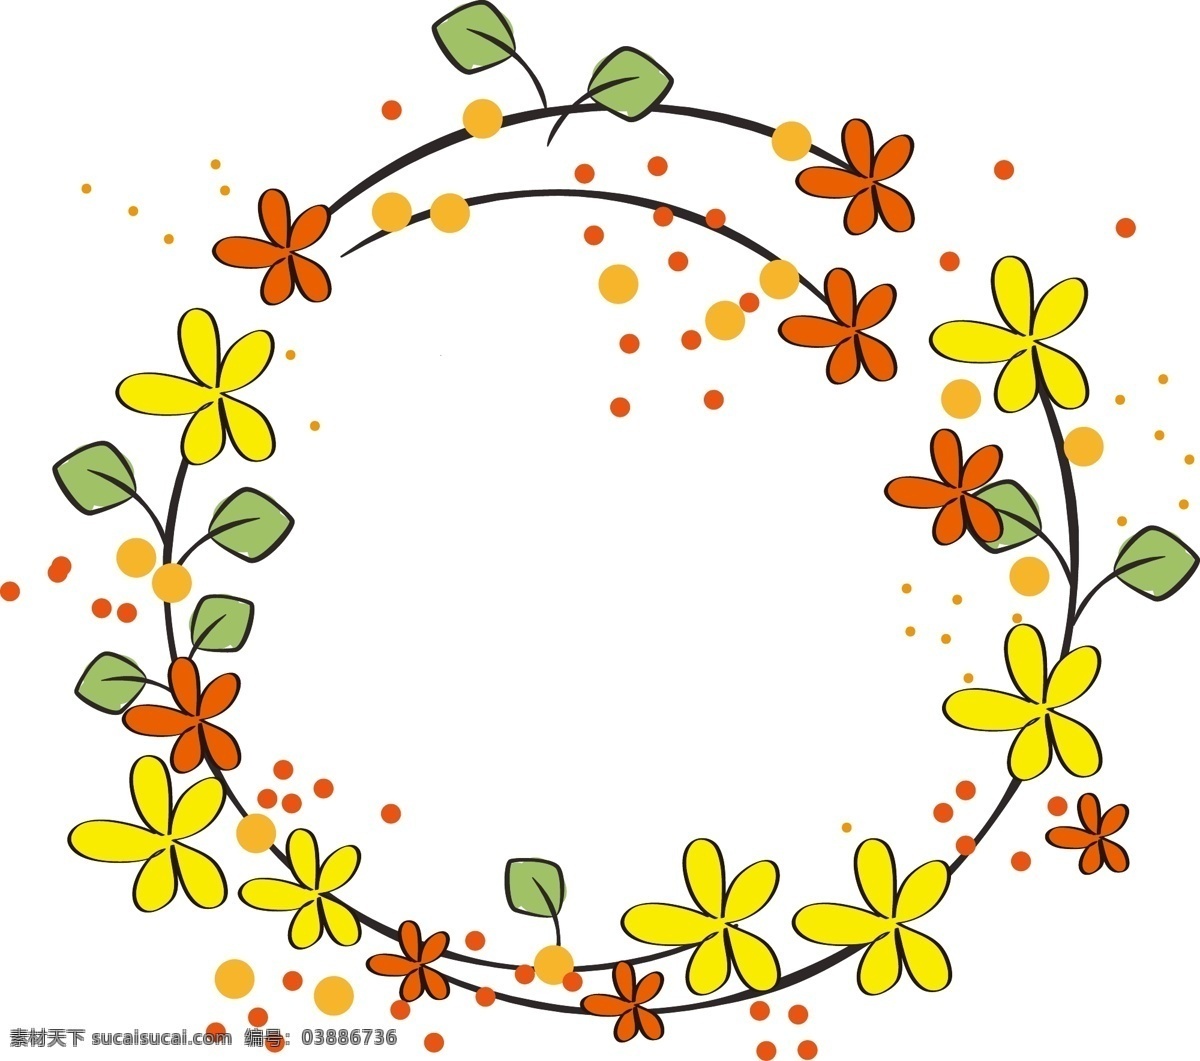 圆形 漂亮 花 藤 插画 圆形的藤蔓 红色的花朵 黄色的花朵 绿色的叶子 植物 漂亮的花藤 花枝